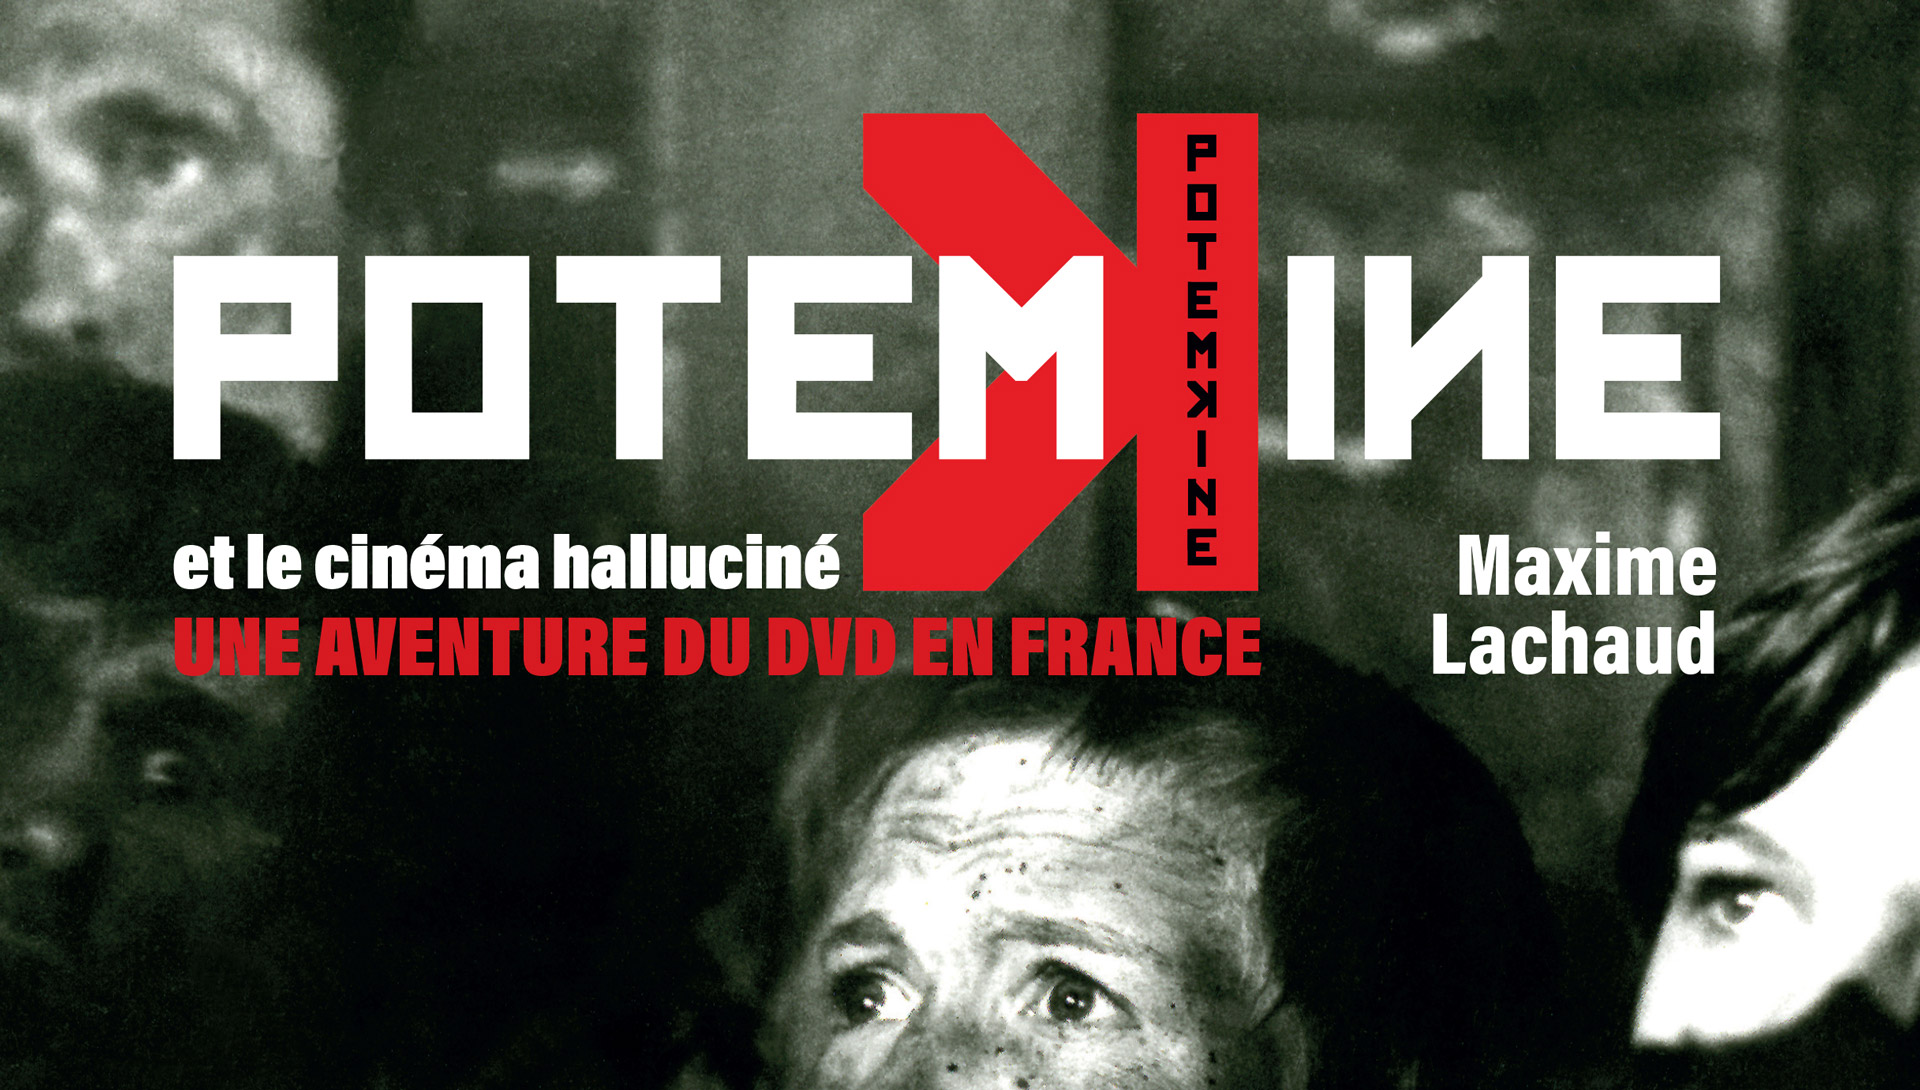 Potemkine et le cinéma halluciné, une aventure du DVD en France